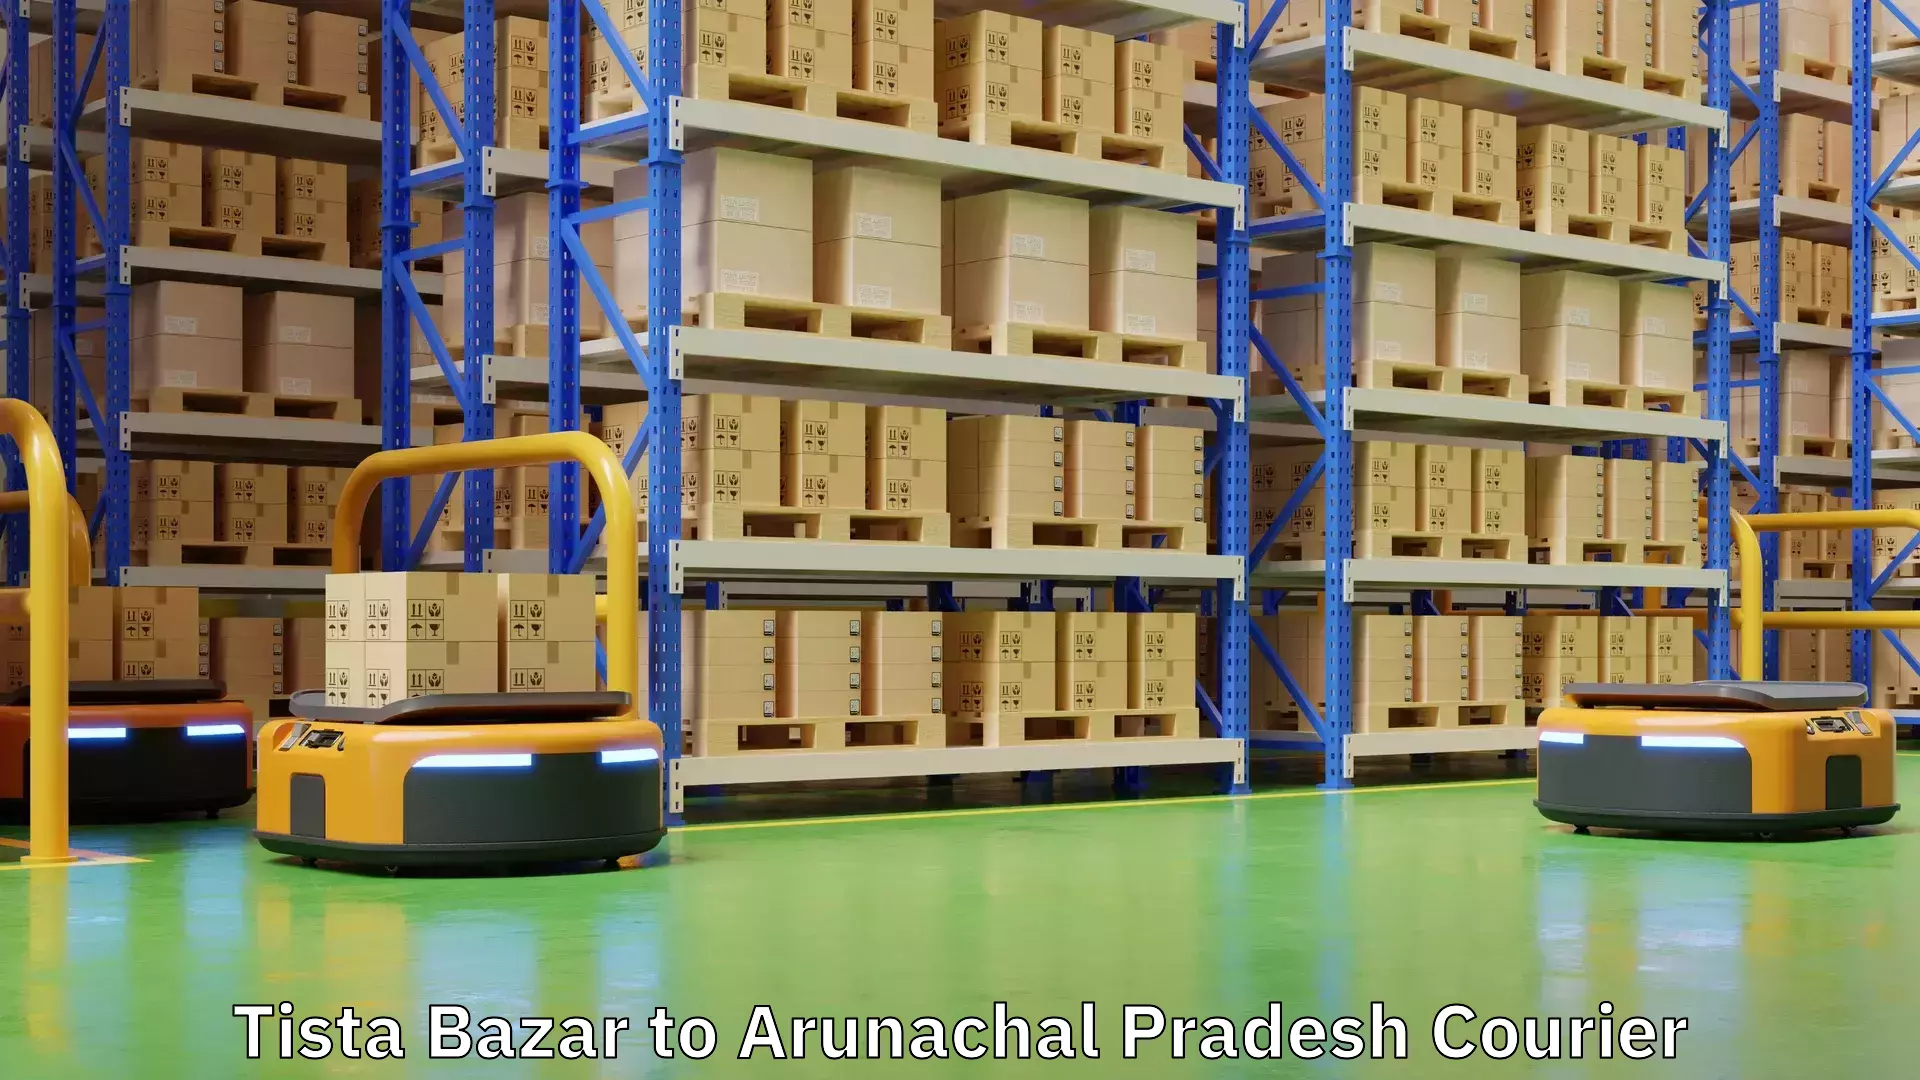 Cash on delivery service Tista Bazar to Arunachal Pradesh